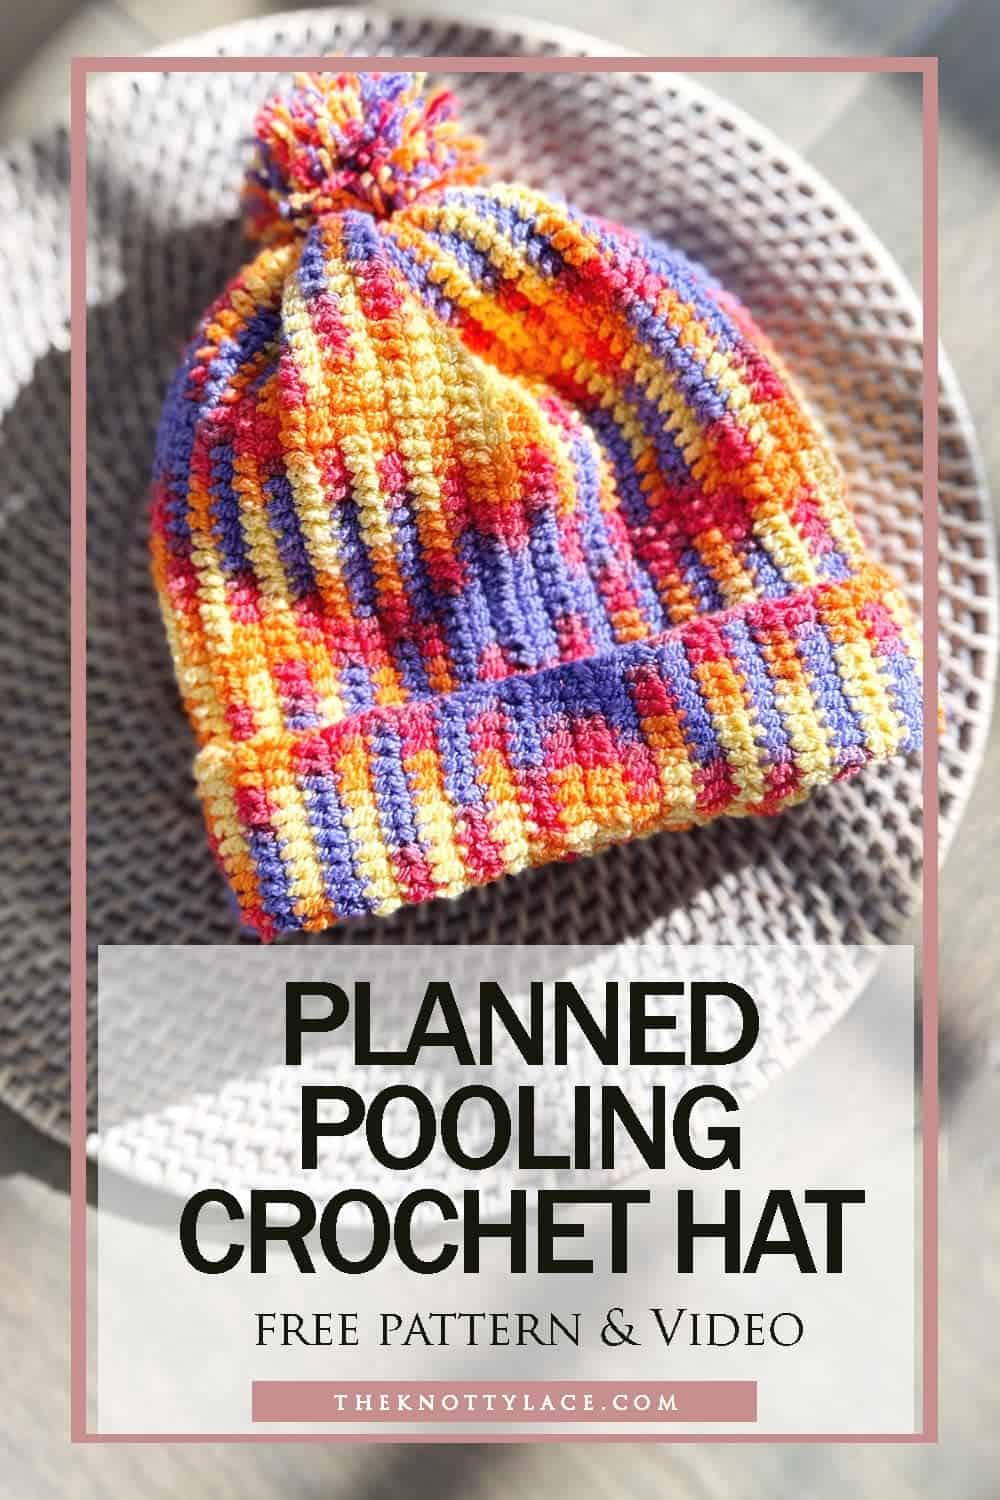 Planned Pooling crochet hat free pattern & video-min